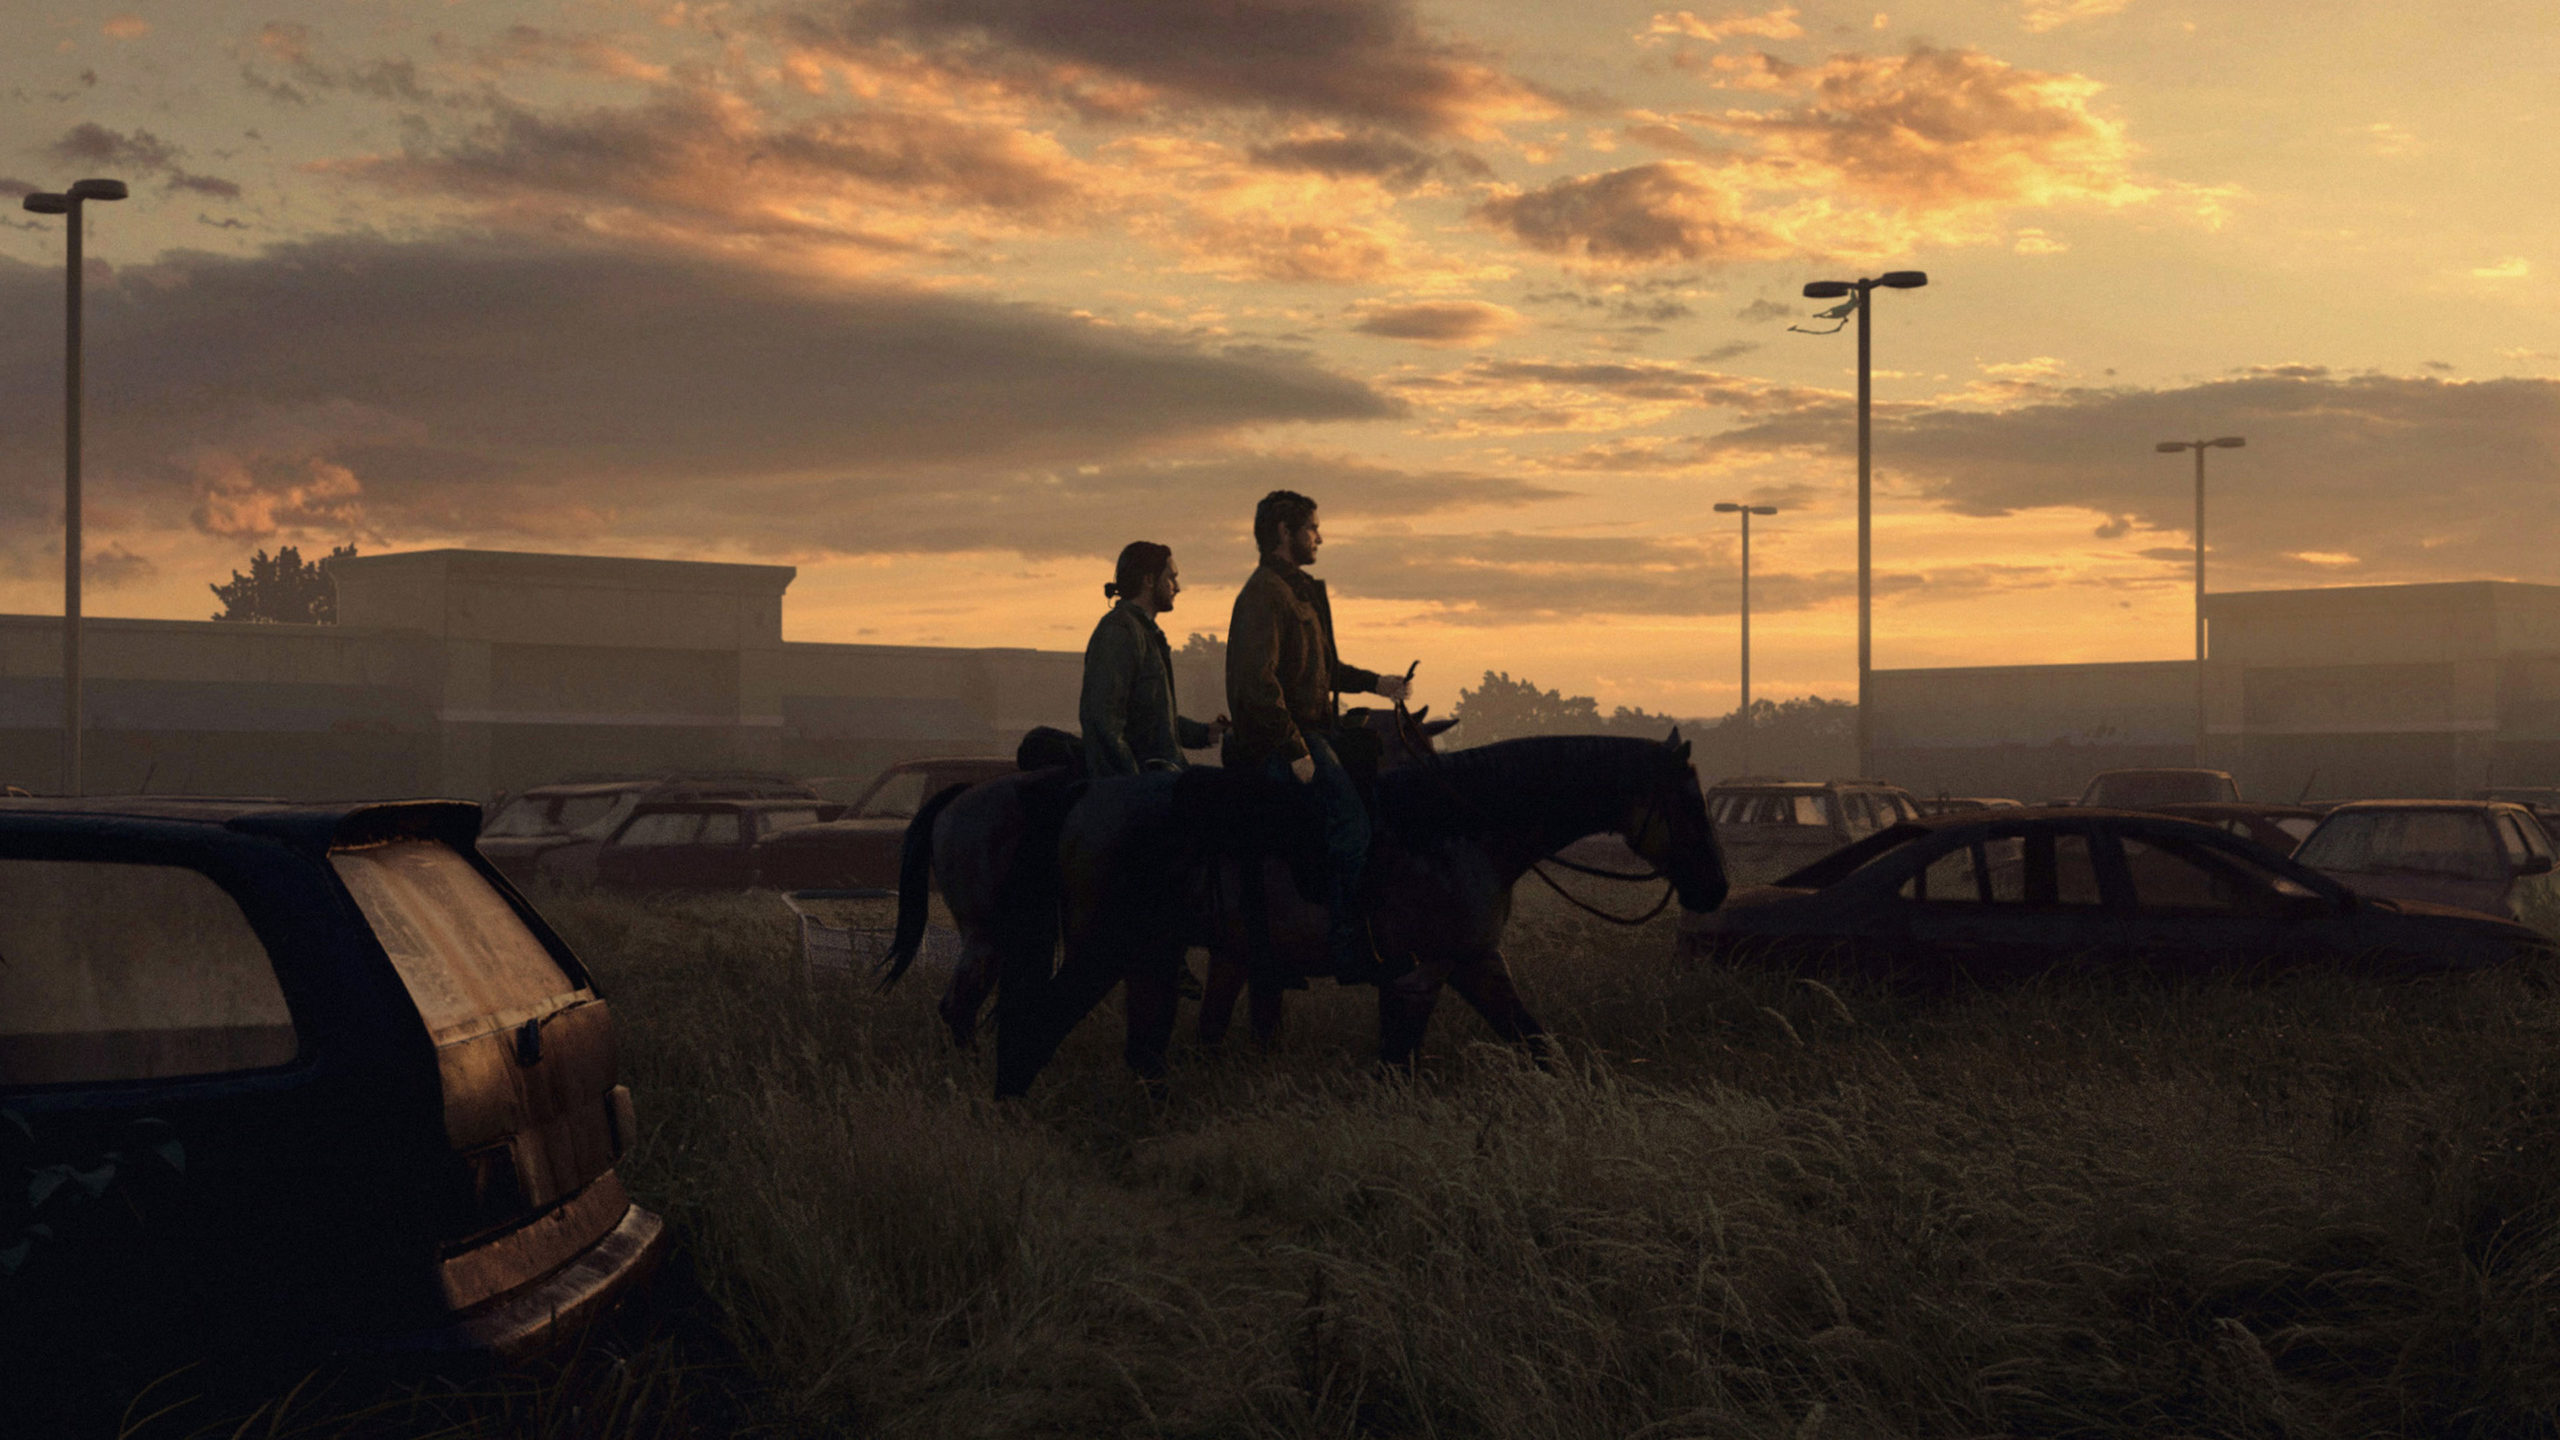 Faça o download de wallpapers de The Last of Us Part 2 - PSX Brasil